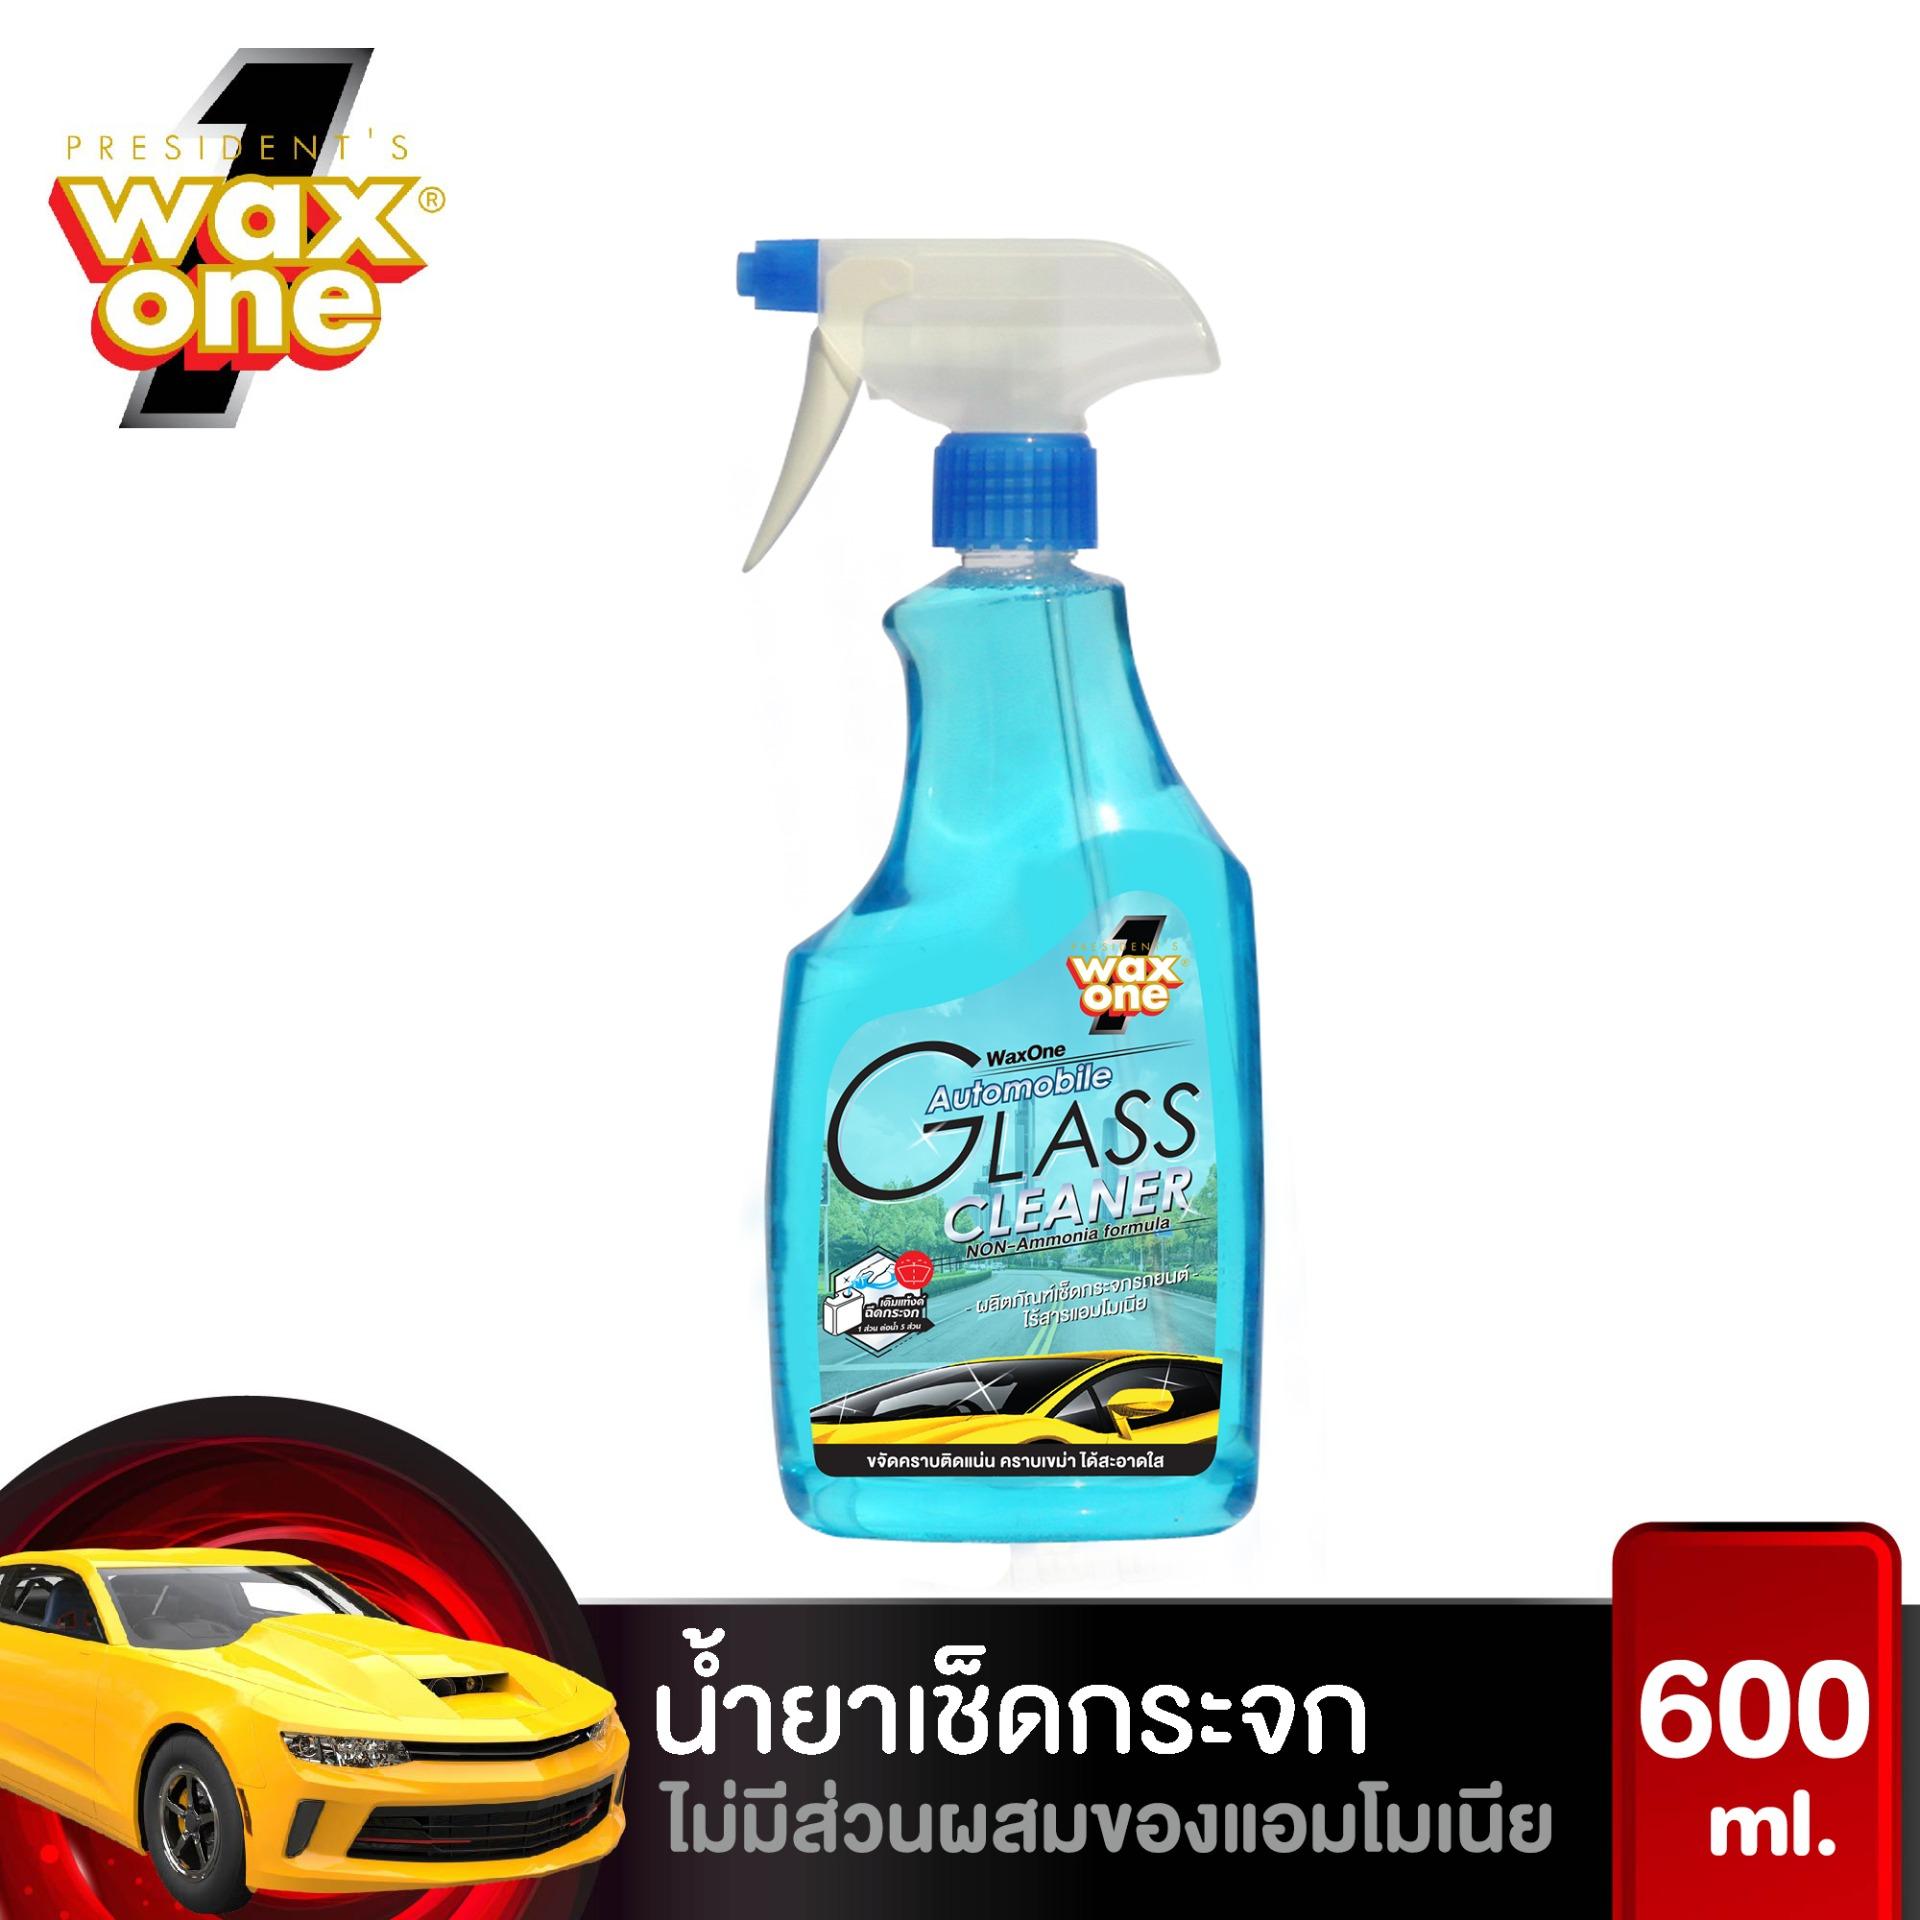 น้ำยาเช็ดกระจก น้ำยาเช็ดกระจกรถยนต์ ไม่มีแอมโมเนีย Wax One Automobile Glass Cleaner หัวฉีด 600 ml.